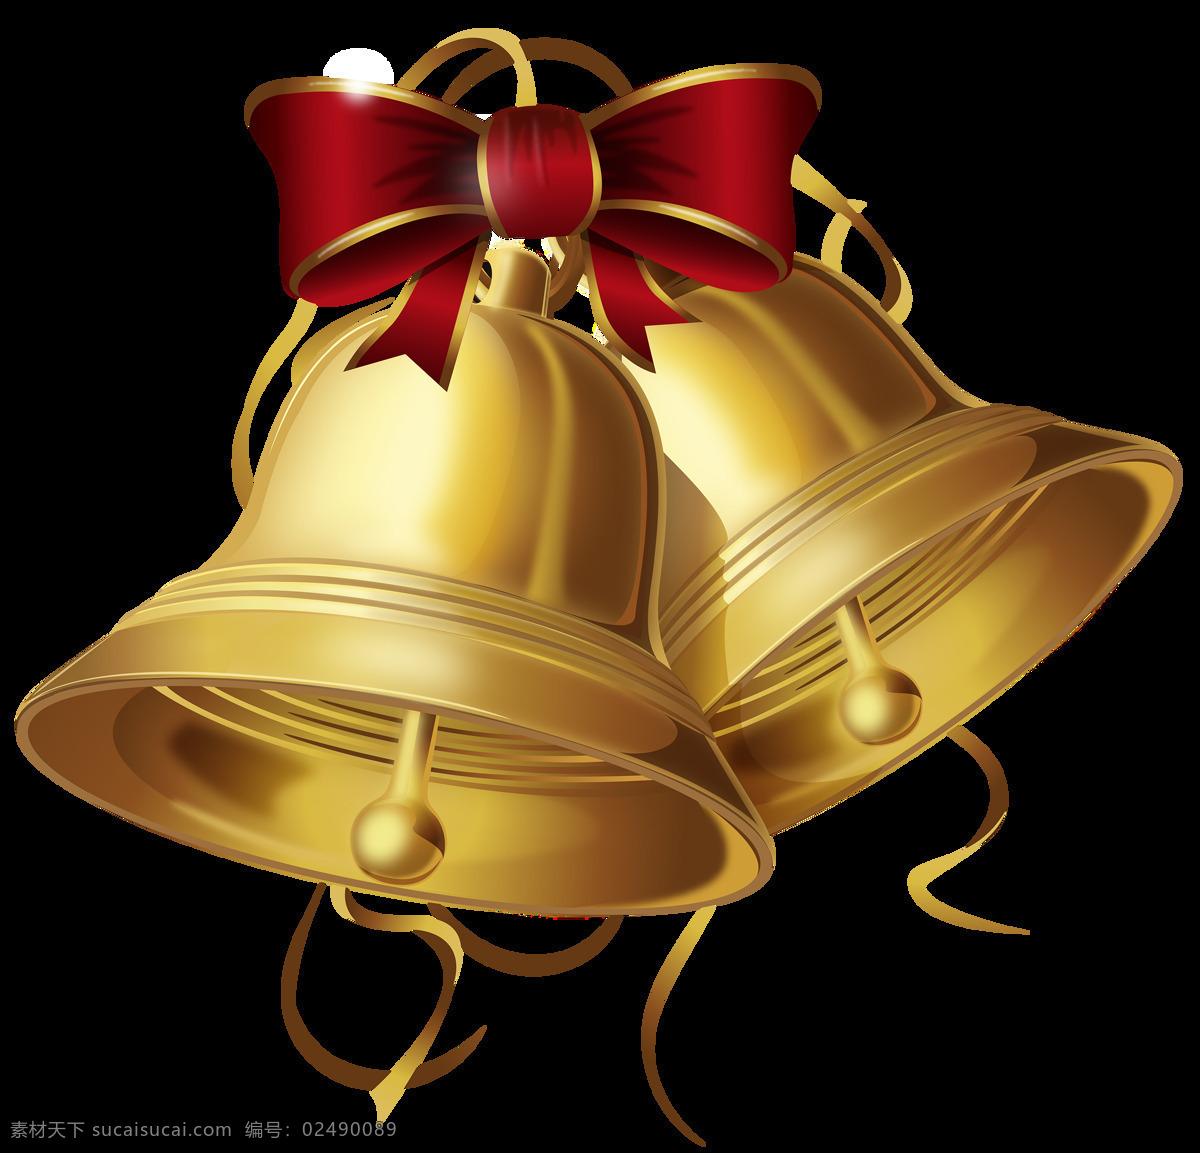 圣诞节 铃铛 元素 圣诞 礼物 装饰 彩带 装饰品 饰品 元素设计 丝带 可爱